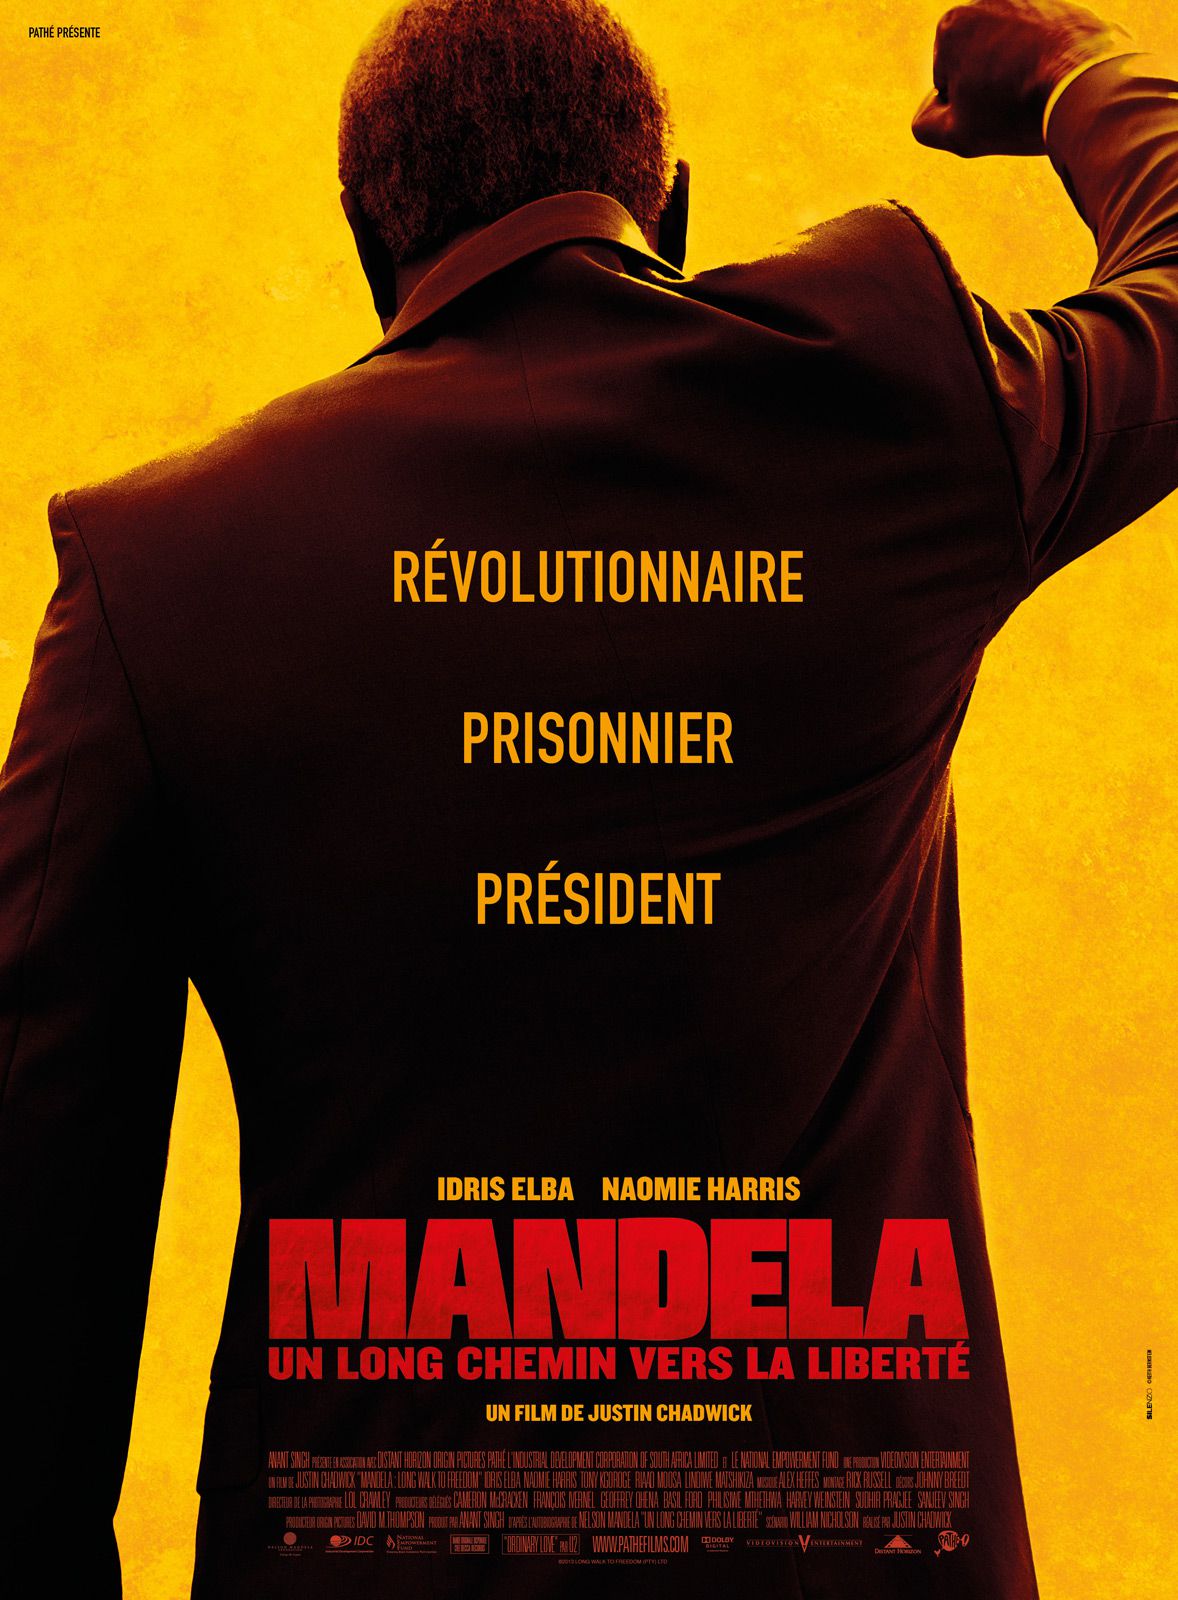 Mandela : Un long chemin vers la liberté - Film (2013) streaming VF gratuit complet